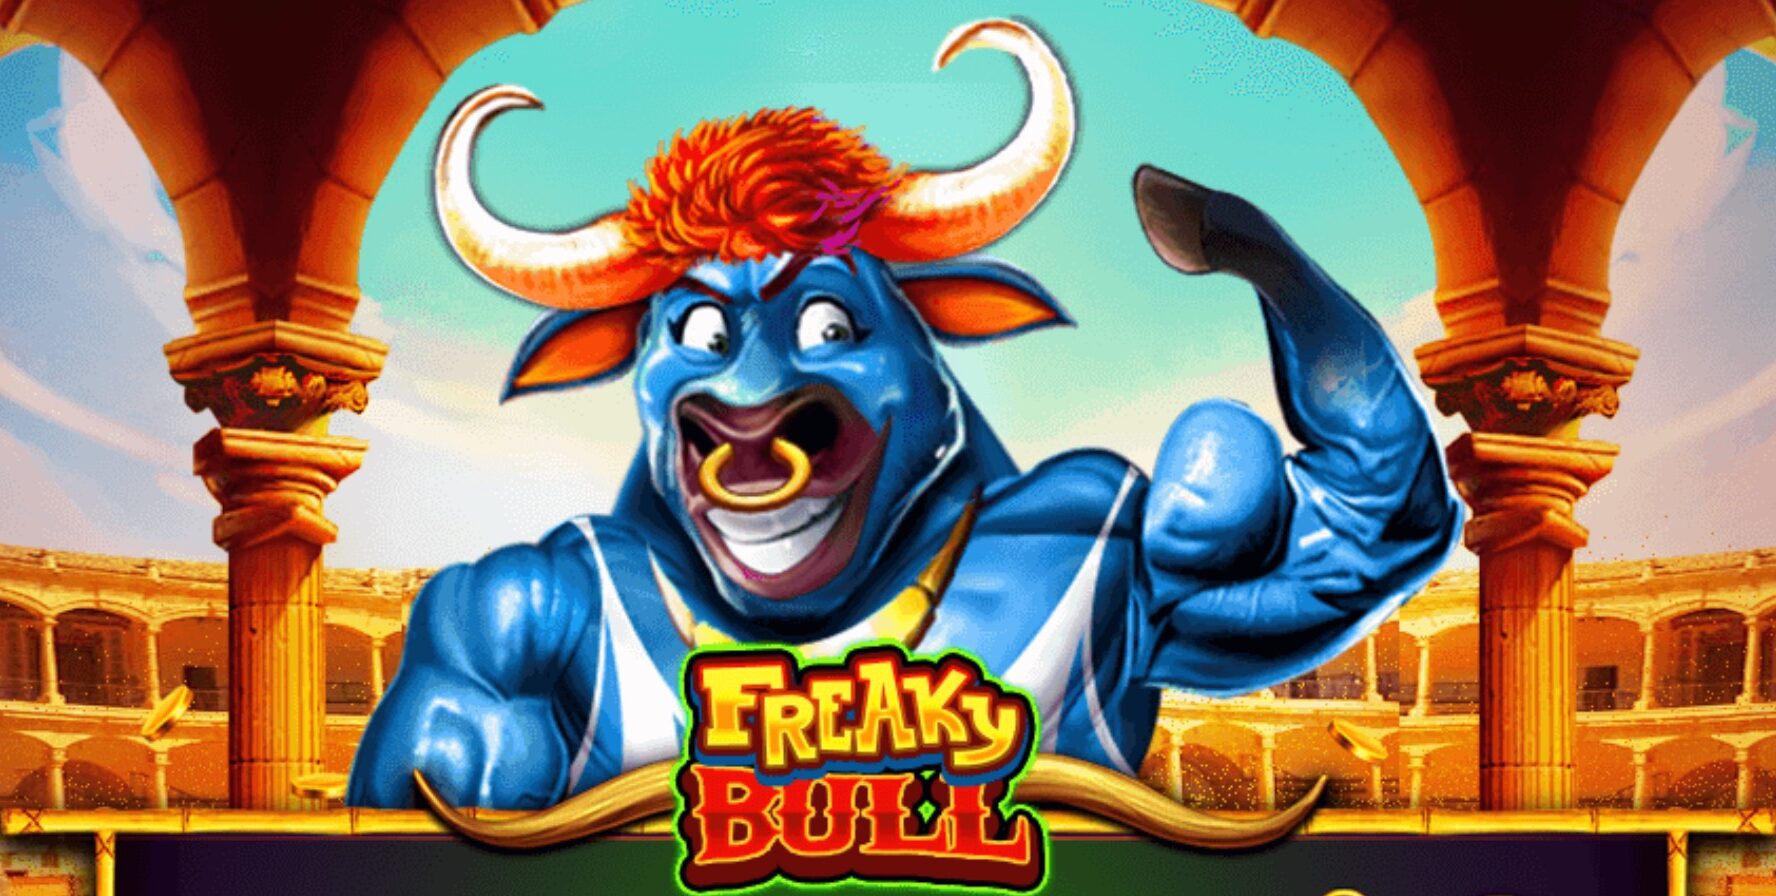 Freaky Bull